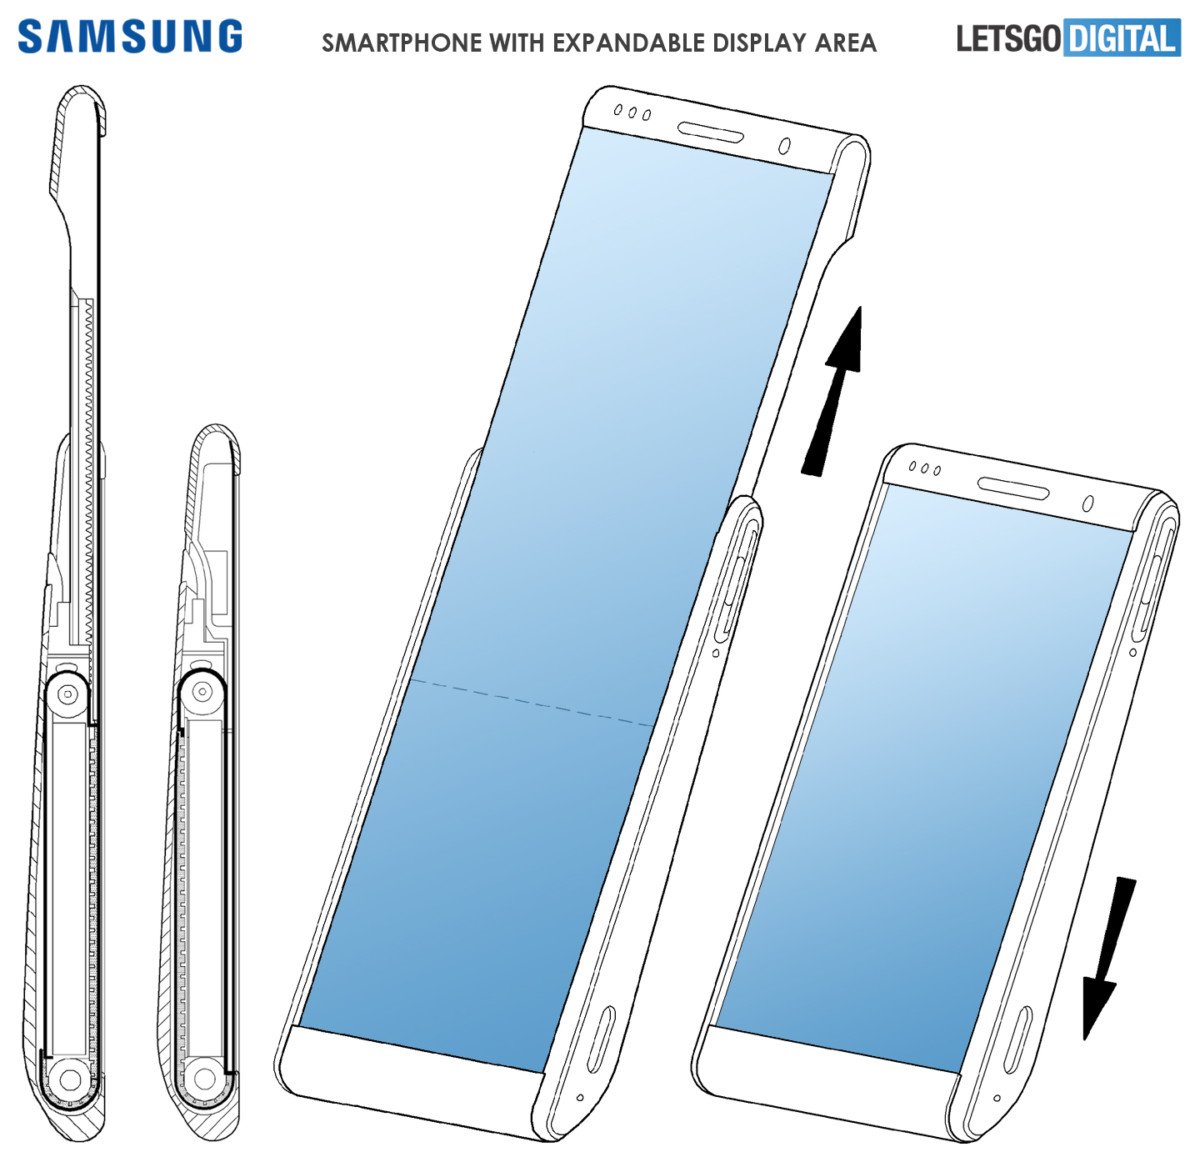 Samsung imagine un concept de smartphone extensible à écran déroulable